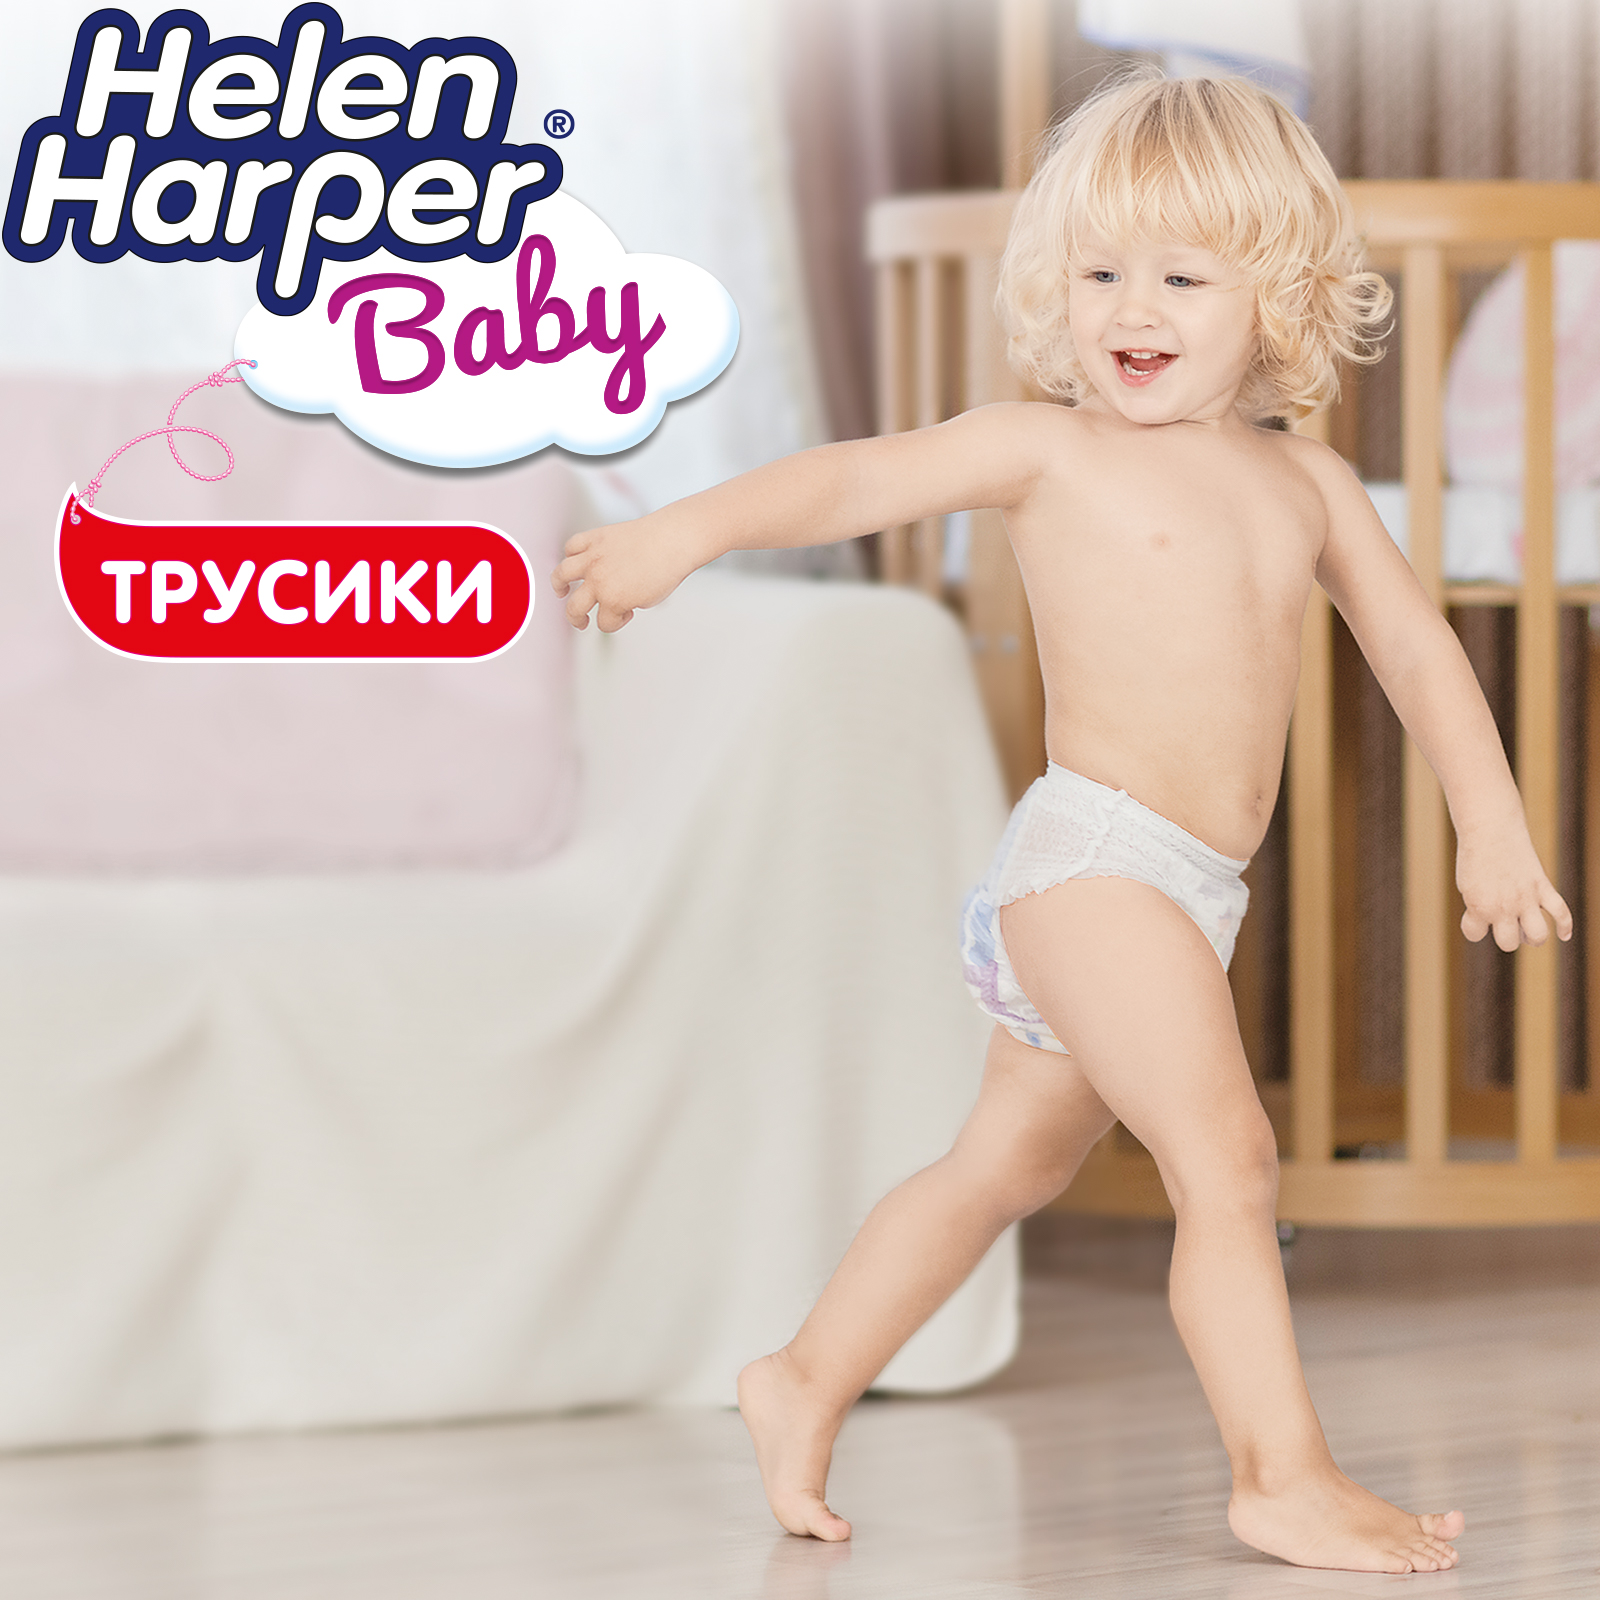 Трусики-подгузники детские Helen Harper Baby размер 6/XL 18+ кг 22 шт. - фото 5